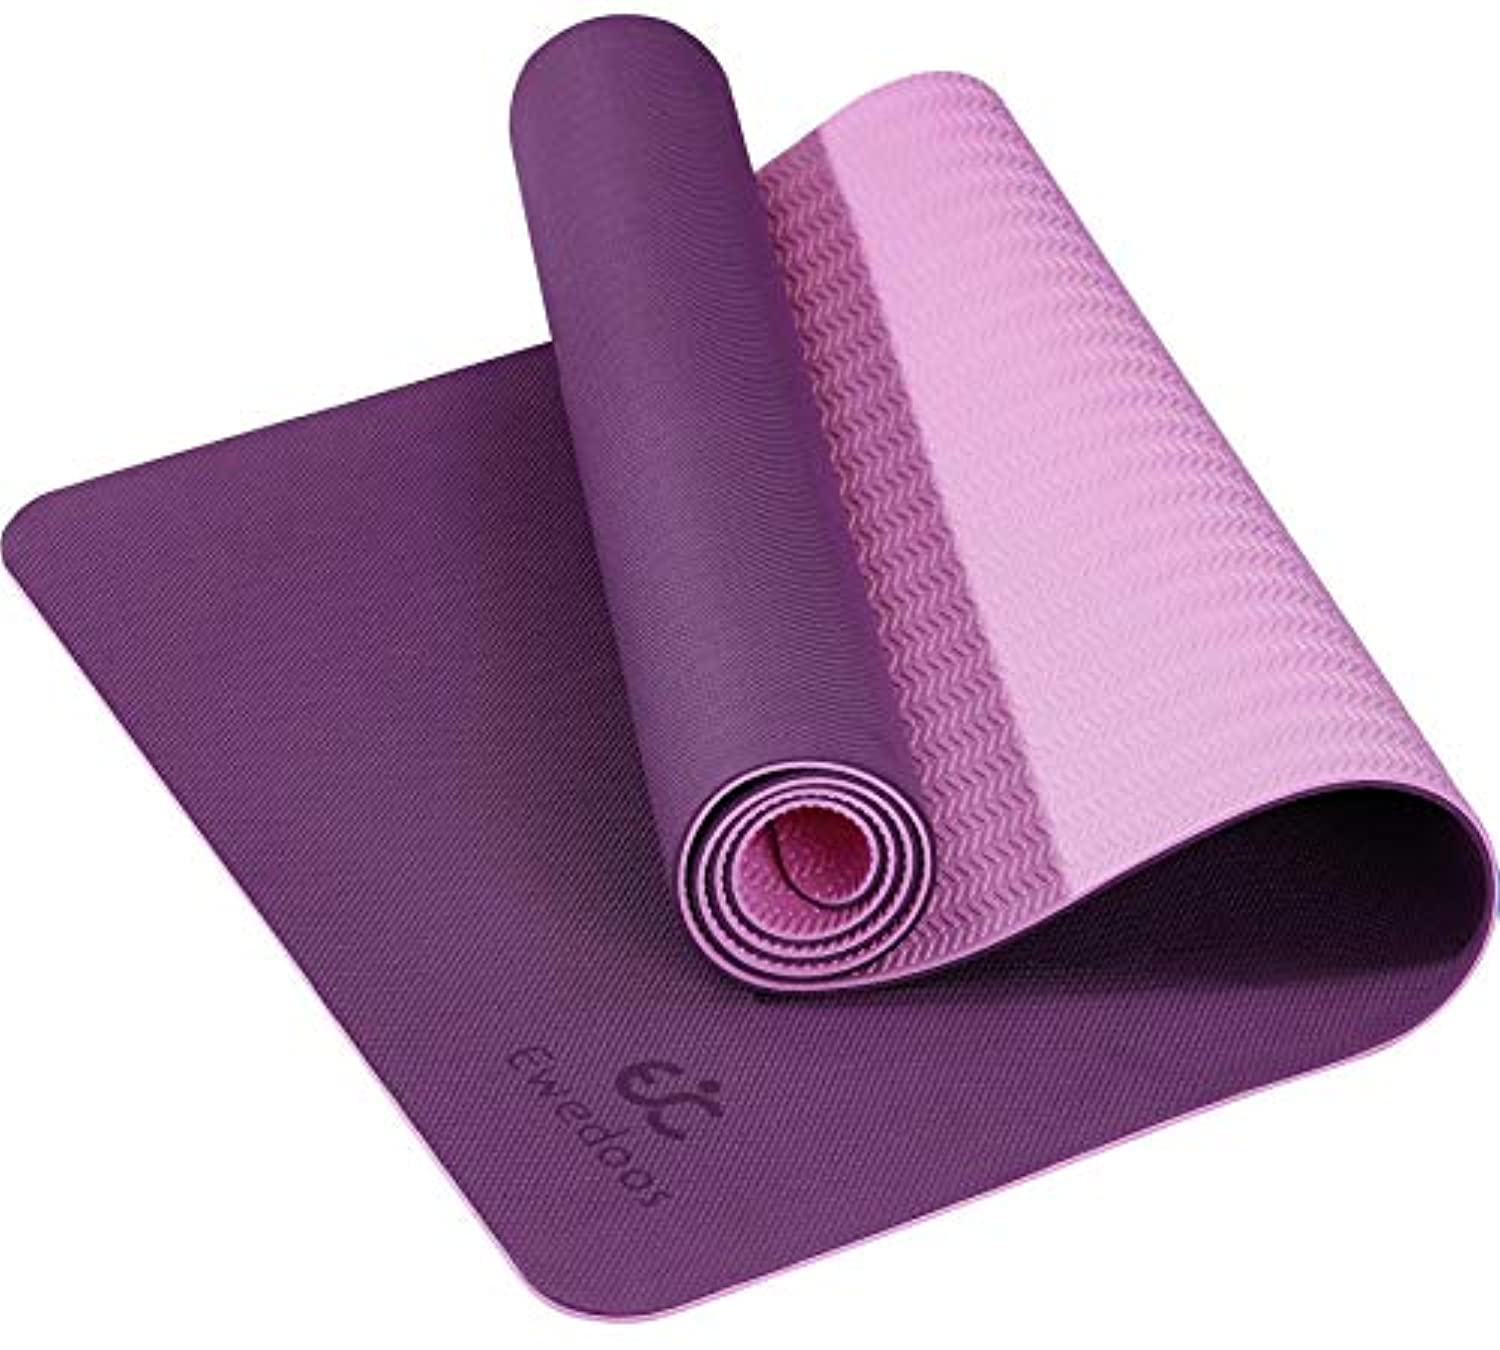  ZCWYP Esterilla de yoga profesional gruesa antideslizante,  esterilla de ejercicio antidesgarros, esterillas de entrenamiento de pilates  y ejercicios de suelo, rosa 2 72.0 x 31.5 x 0.6 in : Deportes y